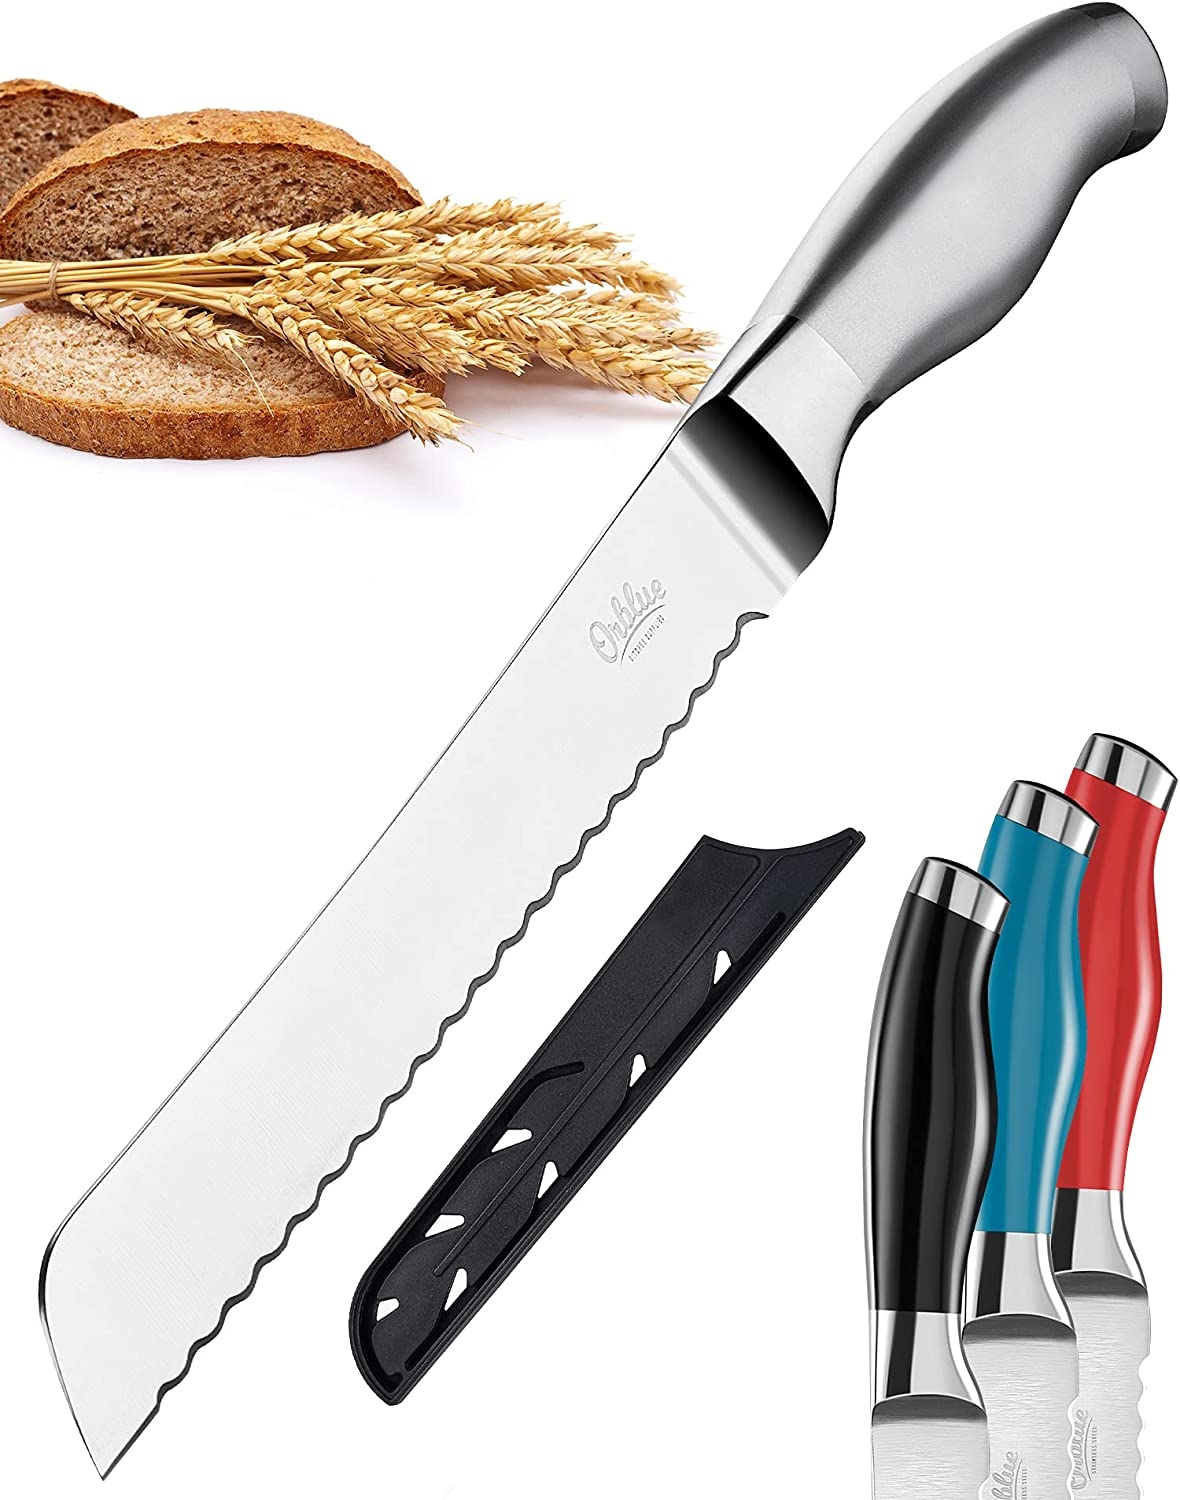 Bread Knife On Amazon